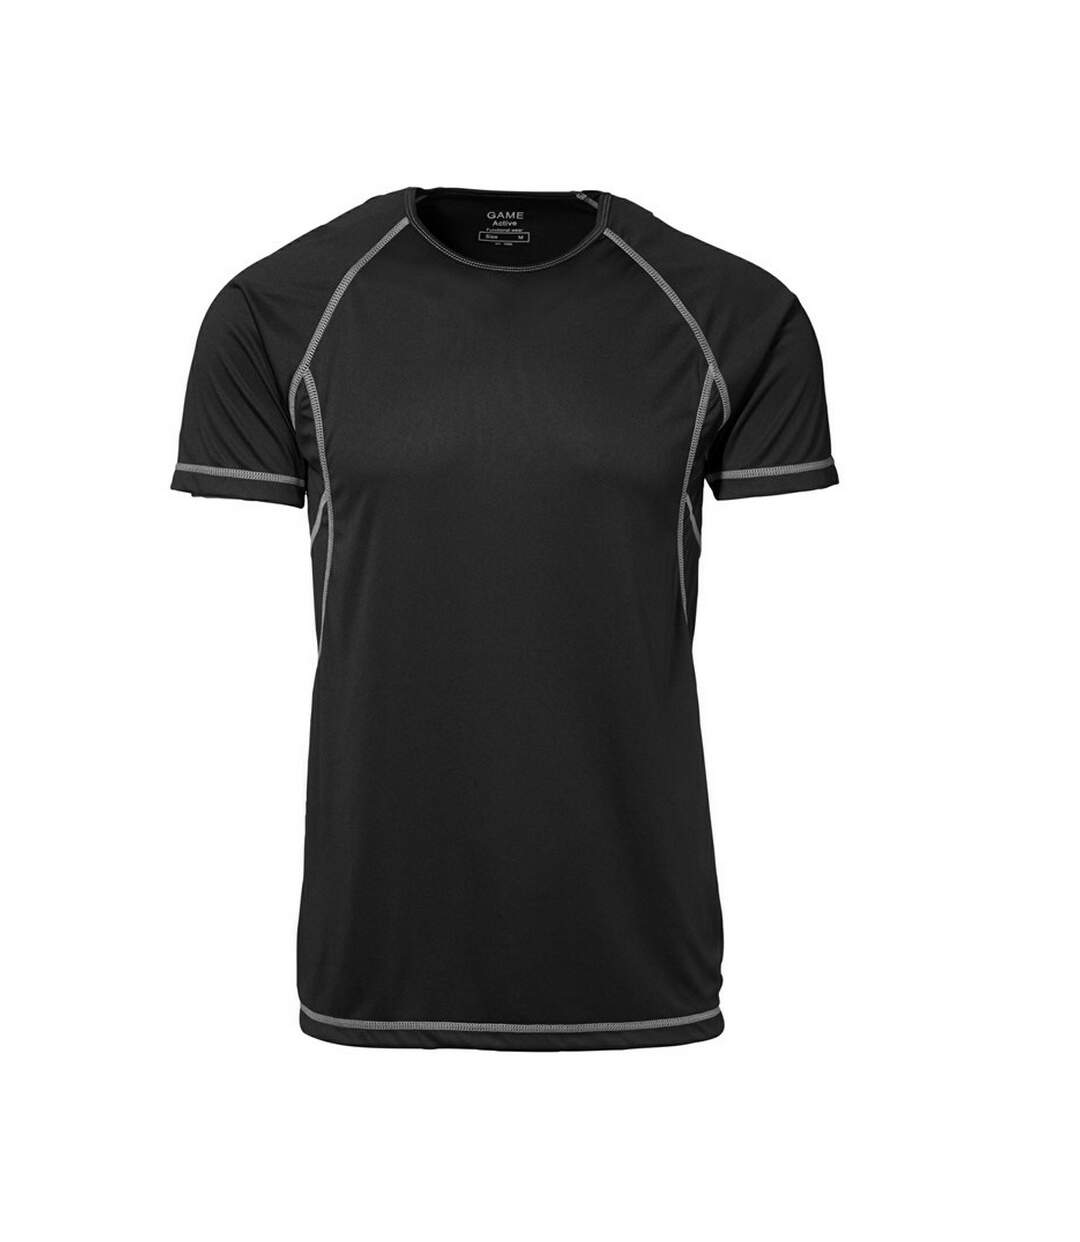 ID Game - T-shirt sport à manches courtes (coupe ajustée) - Homme (Noir) - UTID118